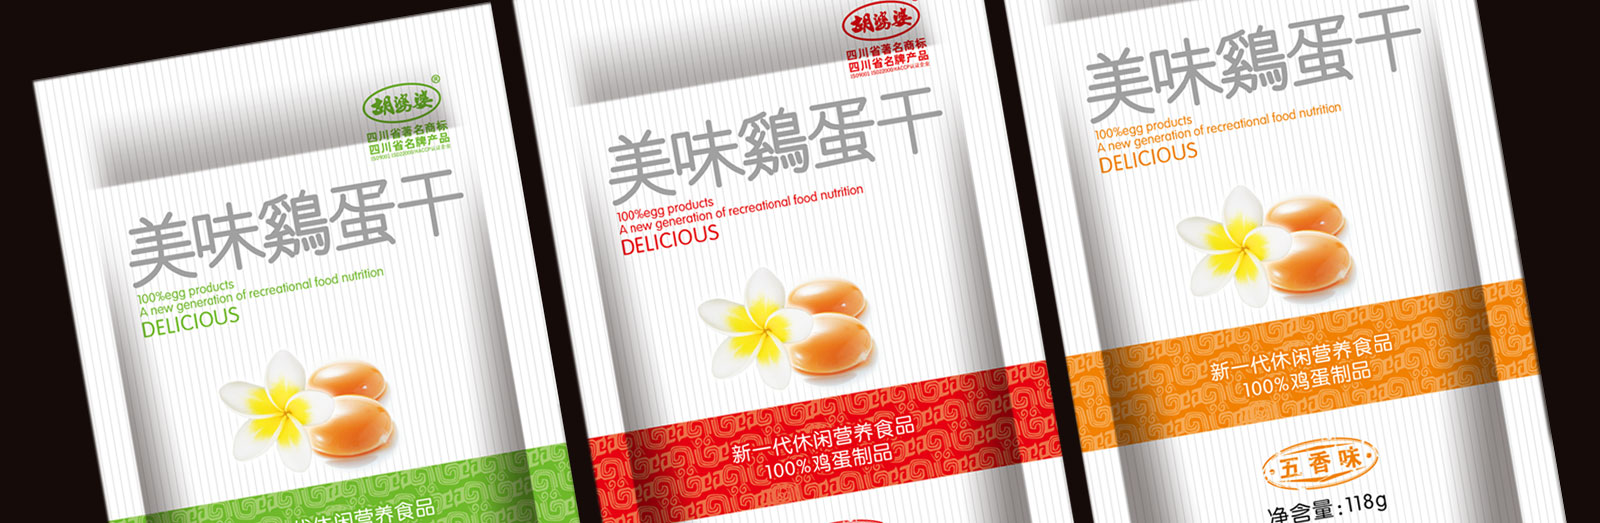 鸡蛋干豆制品包装设计